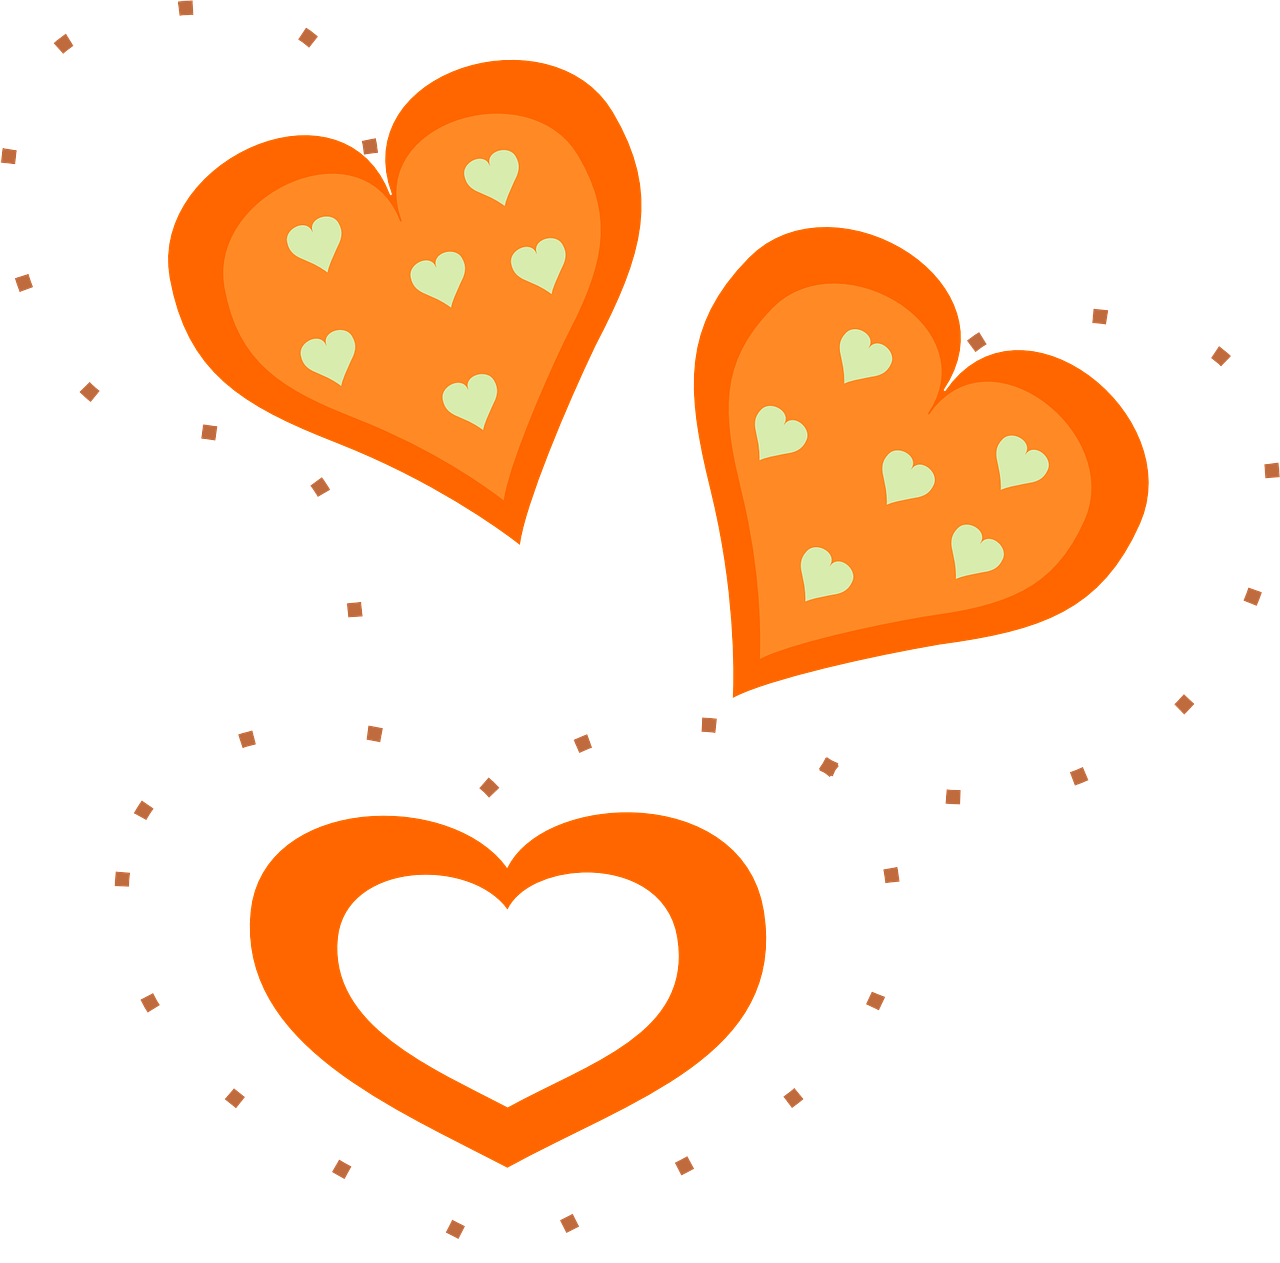 hearts shapes orange free photo